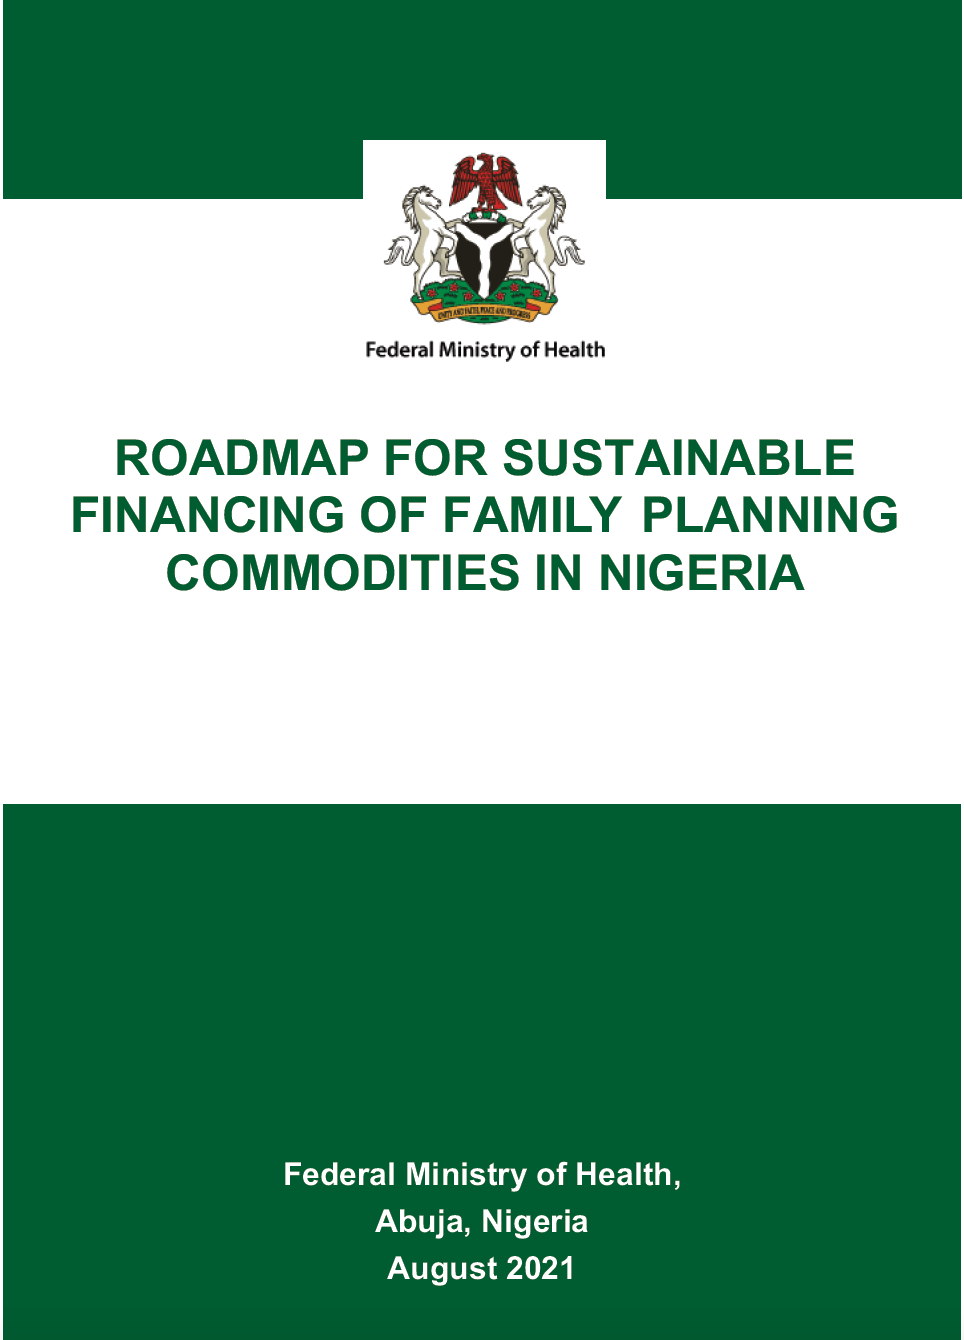 नाइजीरिया में परिवार नियोजन वस्तुओं के सतत वित्तपोषण के लिए रोडमैप